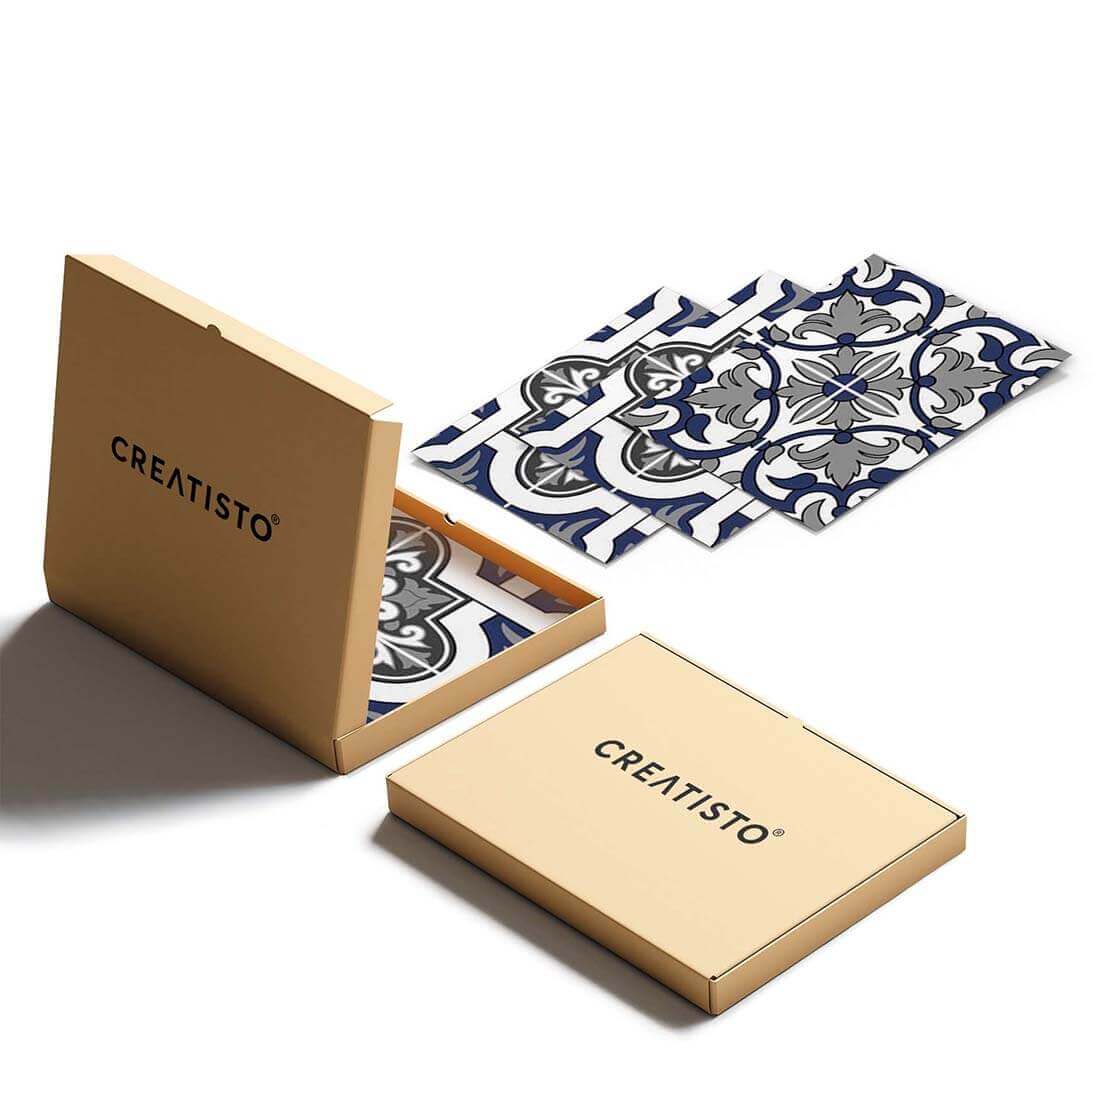 Klebefliesen rechteckig Azulejo Classic - Verpackung - creatisto pds2